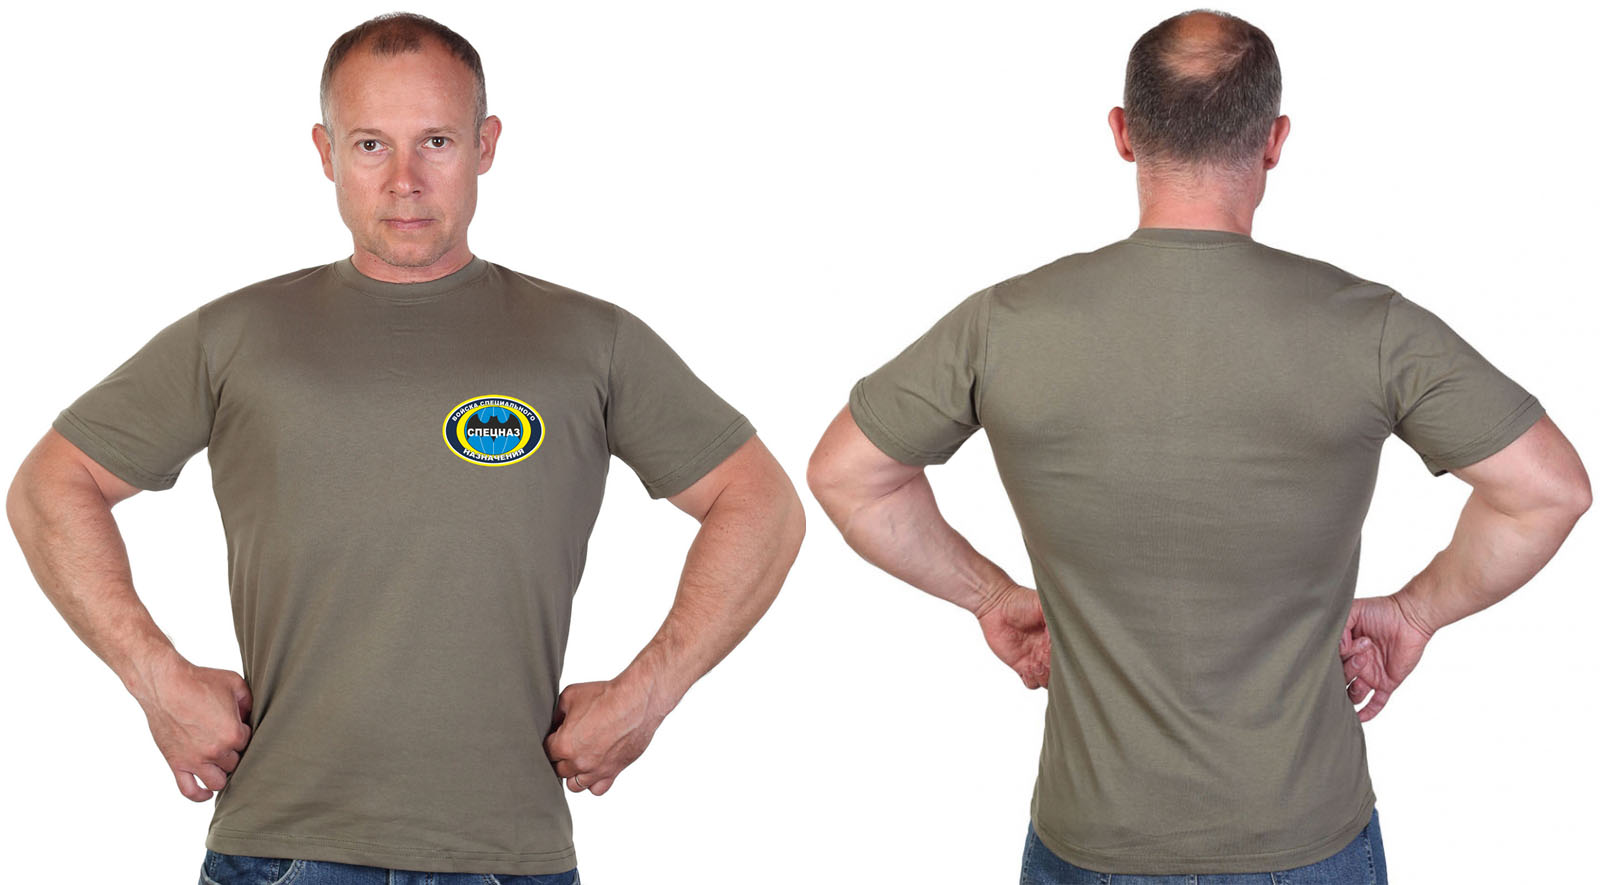 Оливковая футболка с термотрансфером "Спецназ" 